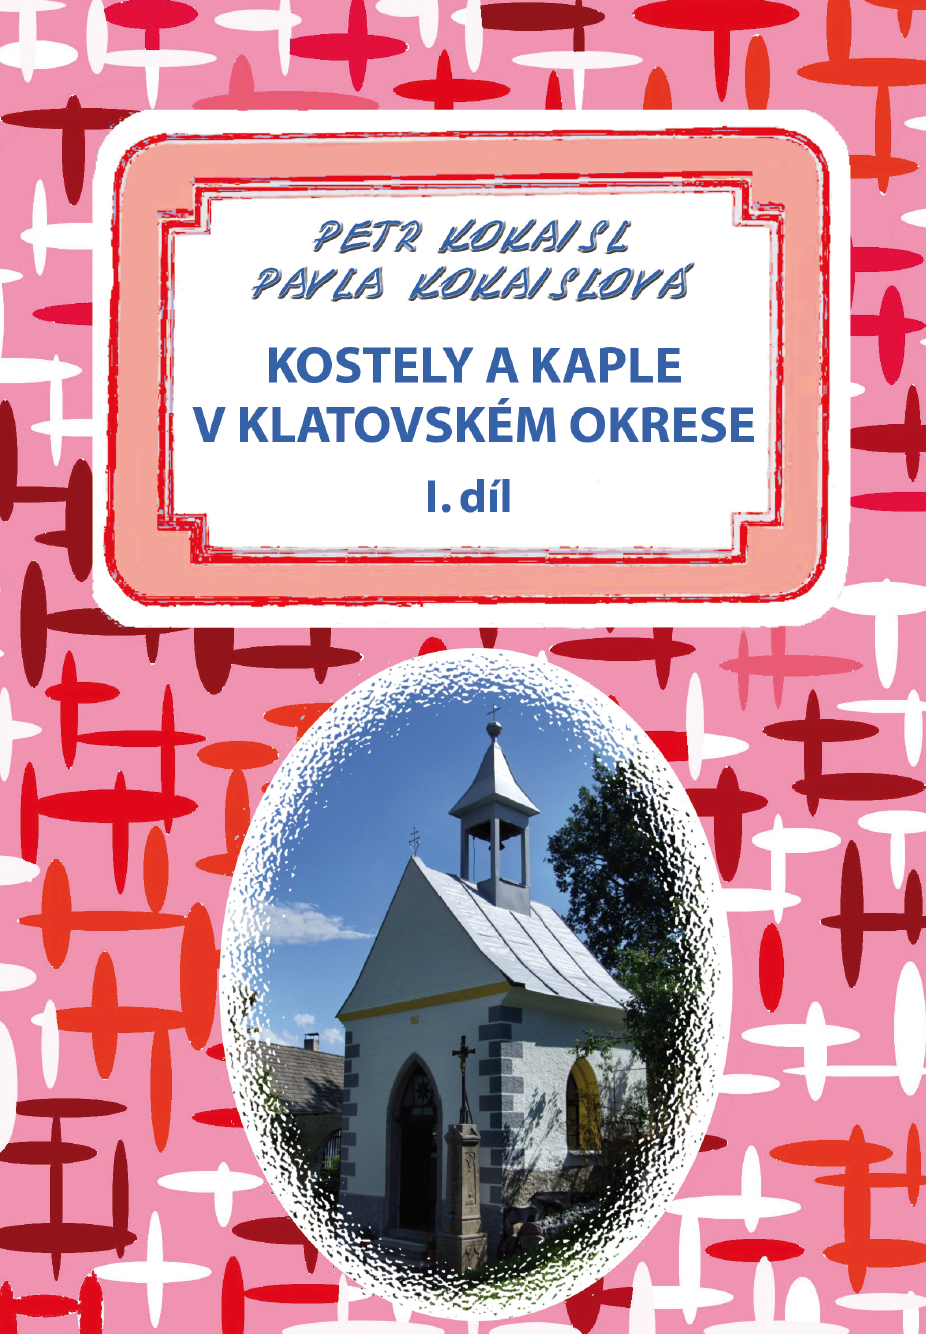  Kostely a kaple v klatovském okrese 1. díl